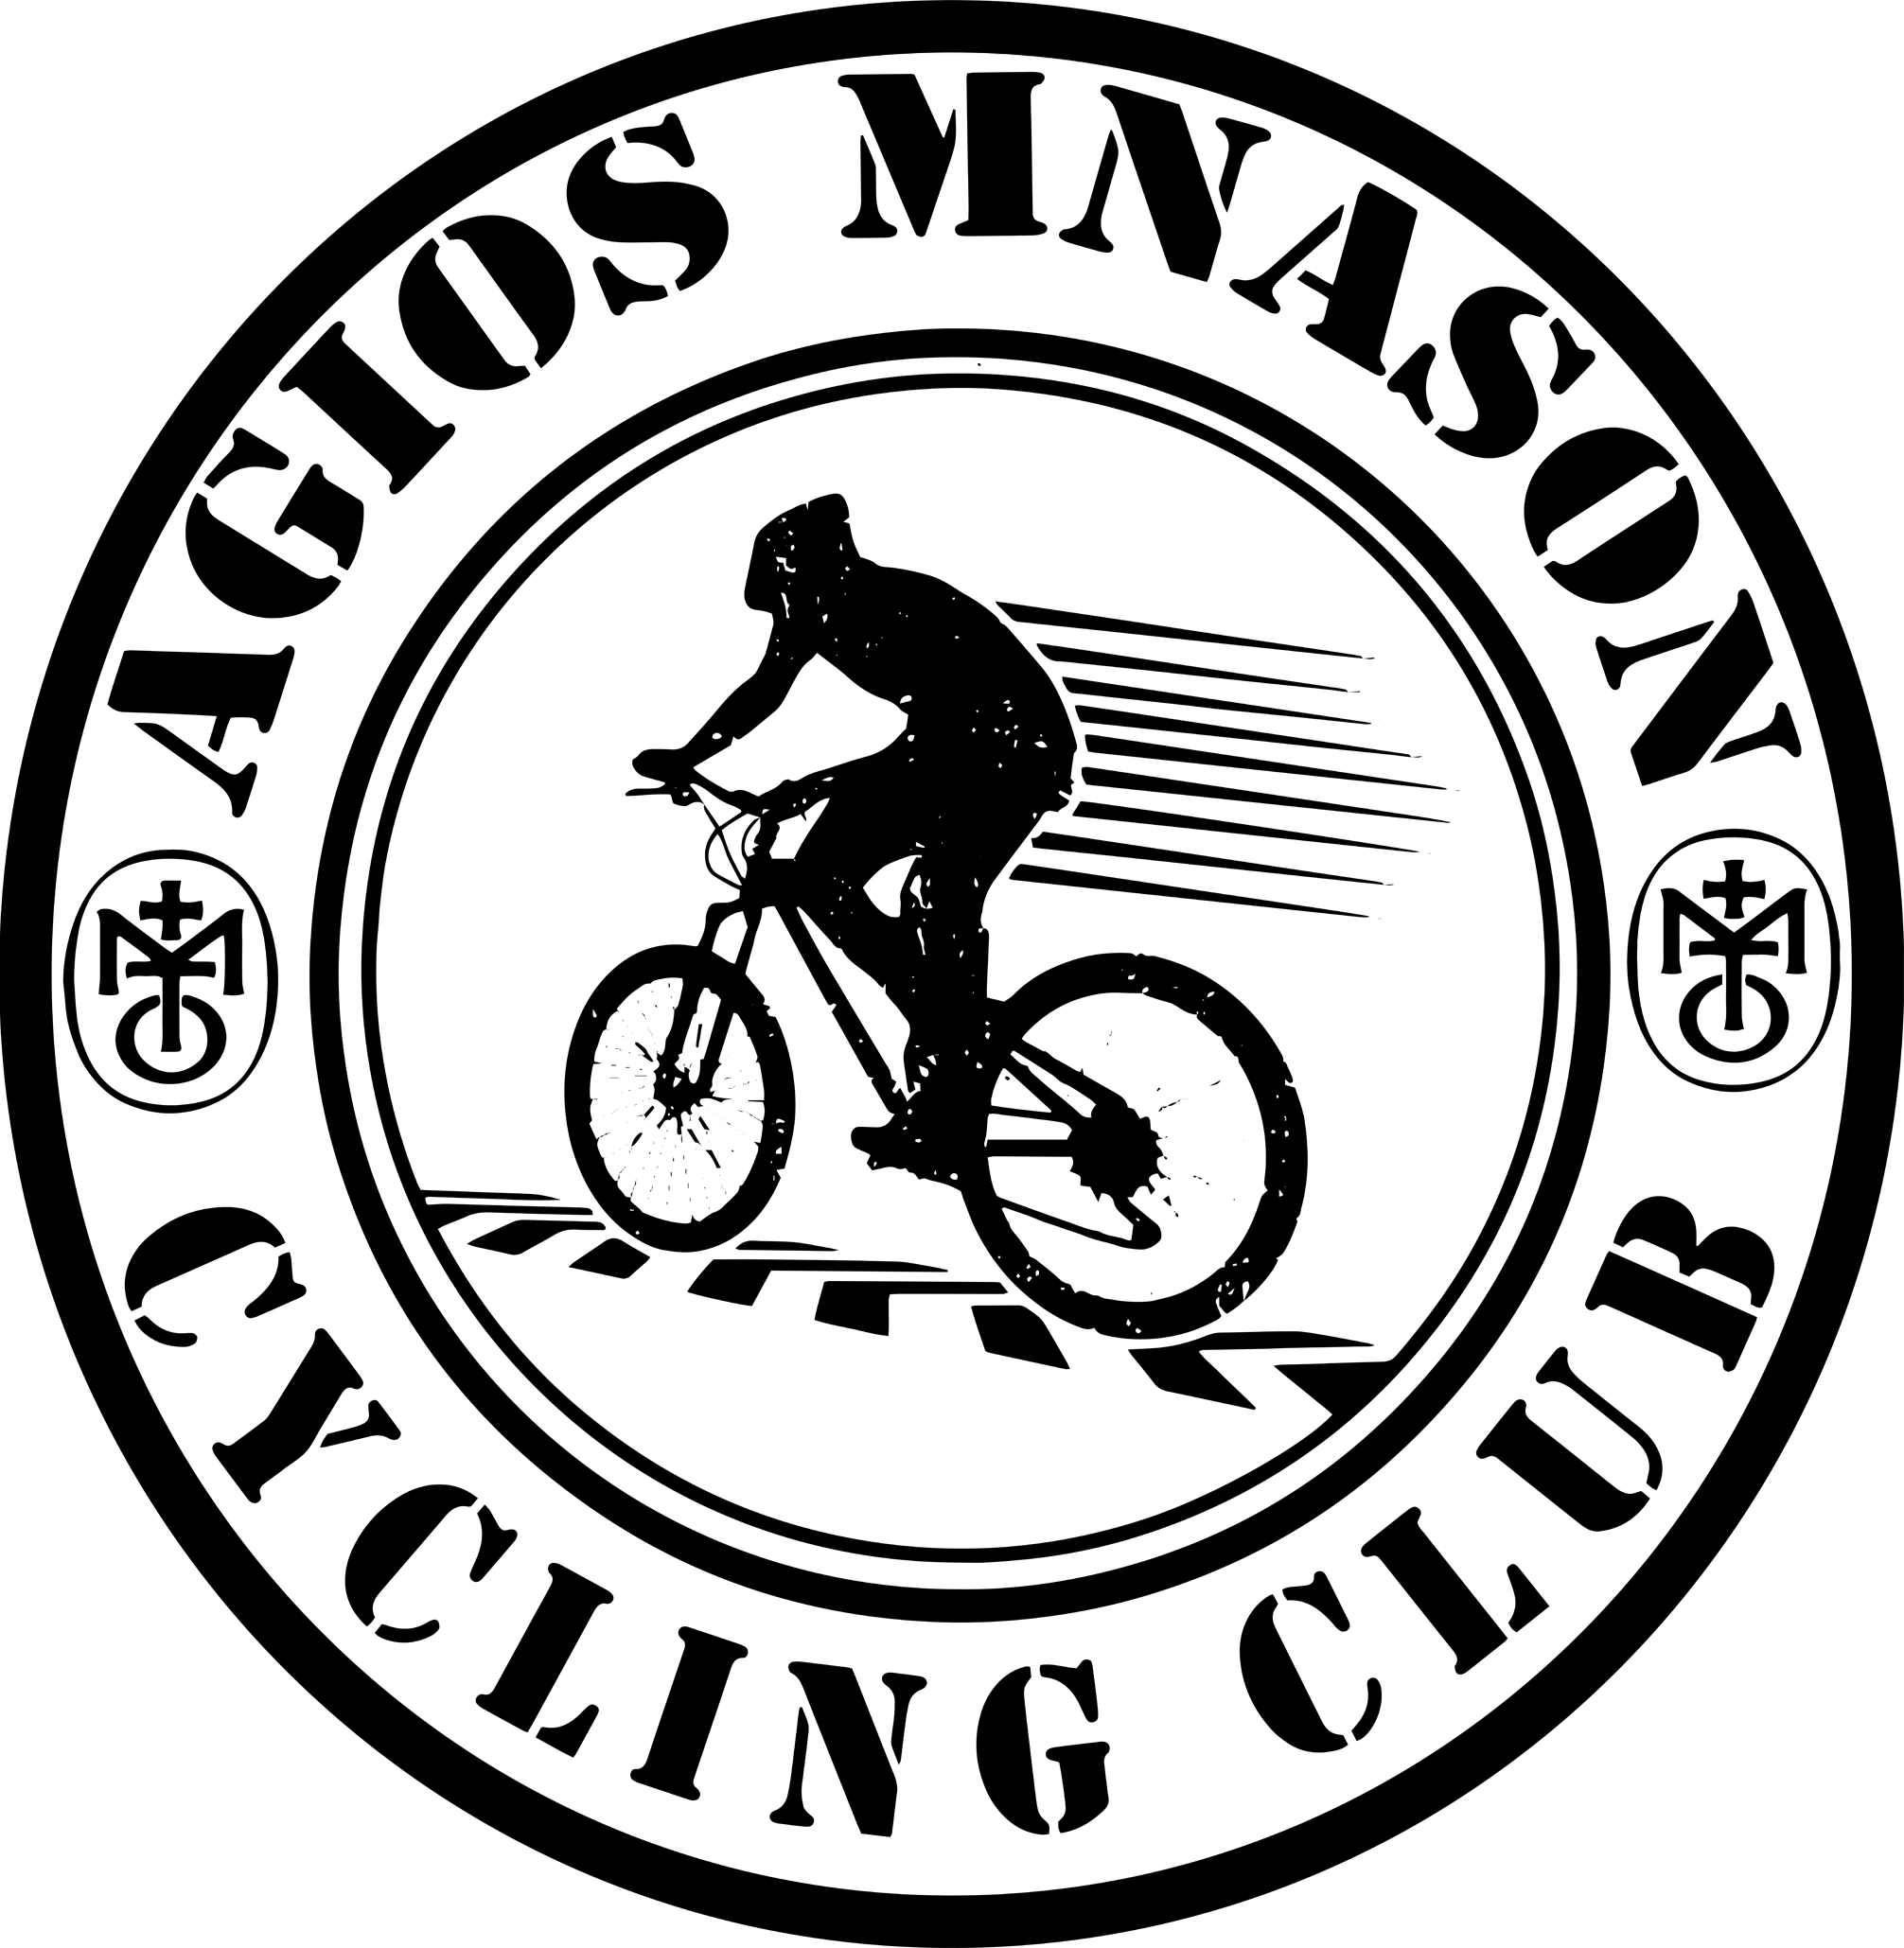 AGIOS MNASON CYCLING CLUB